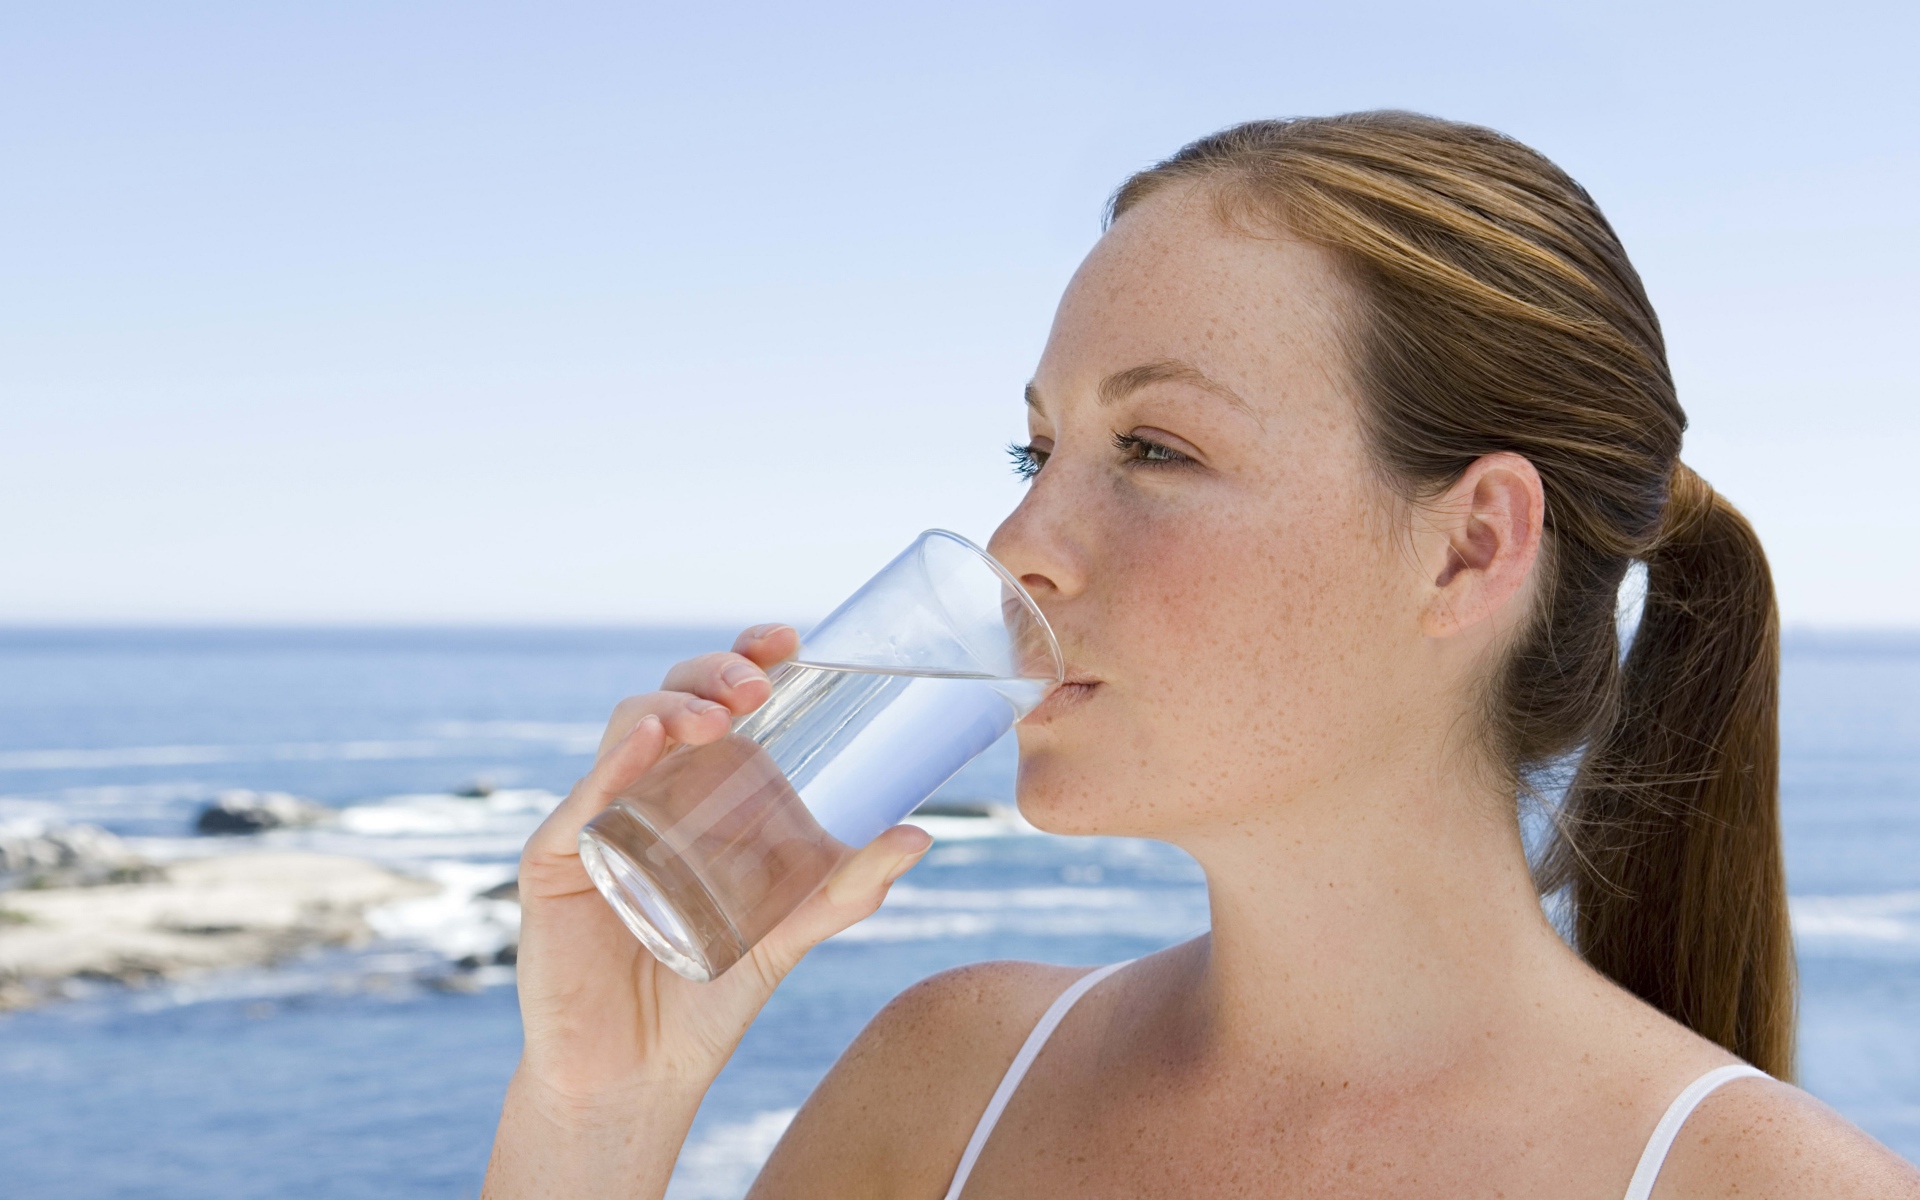 Девушка пьет воду со стакана на фоне моря